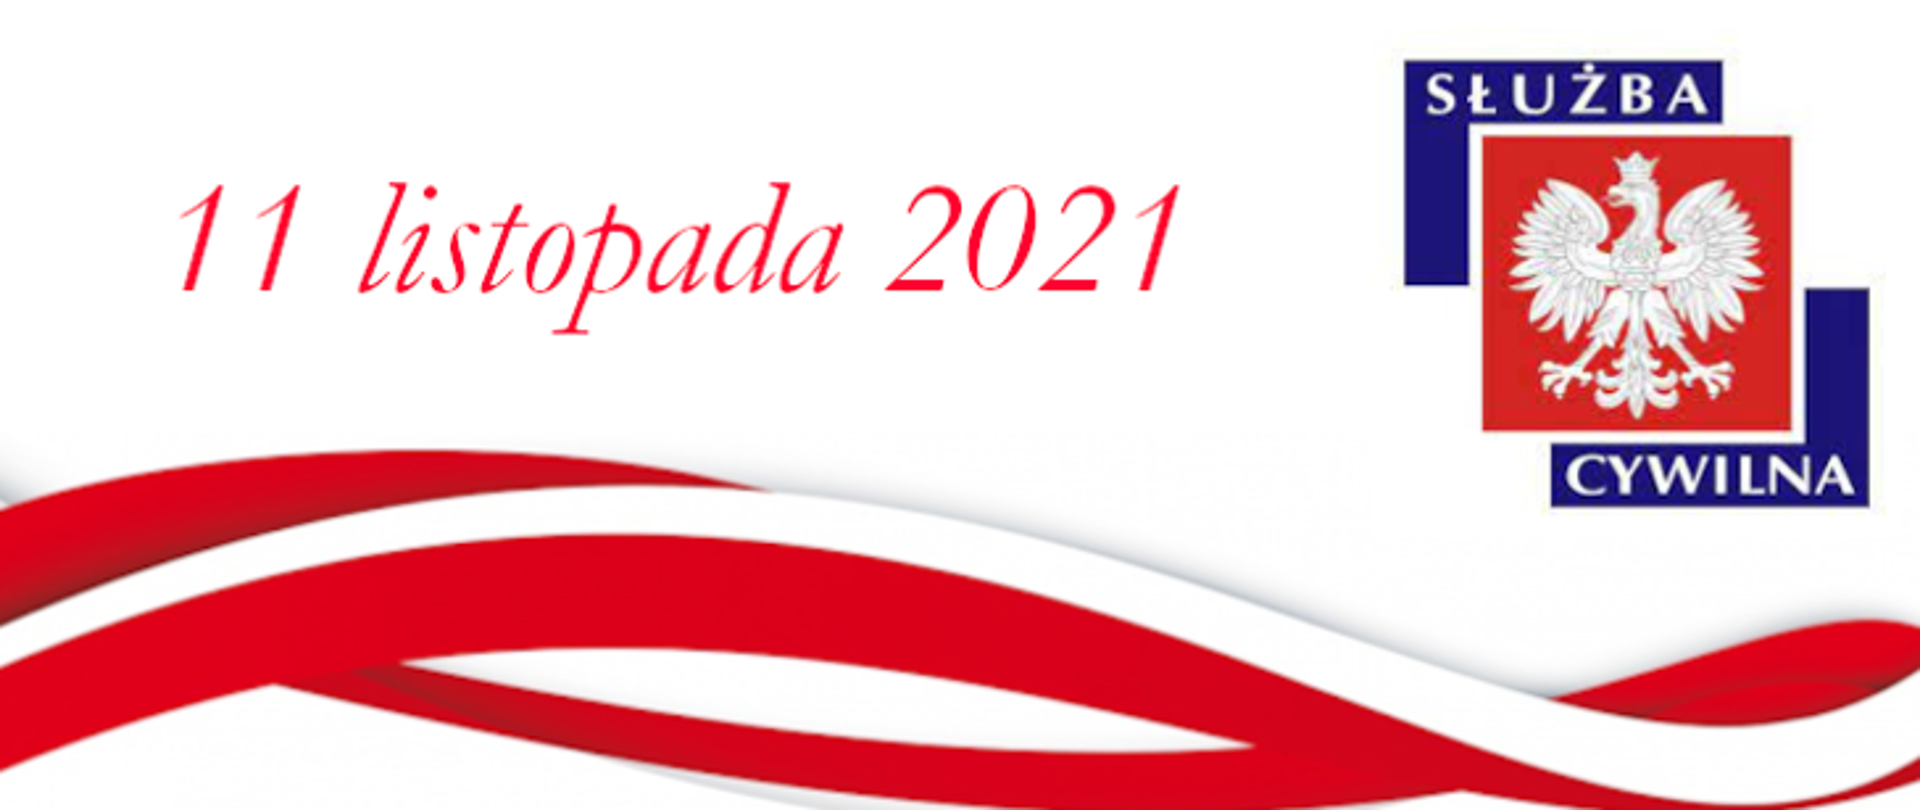 biało czerwona szarfa nad którą widnieje logo z napisem służba cywilna i napisem 11 listopada 2021